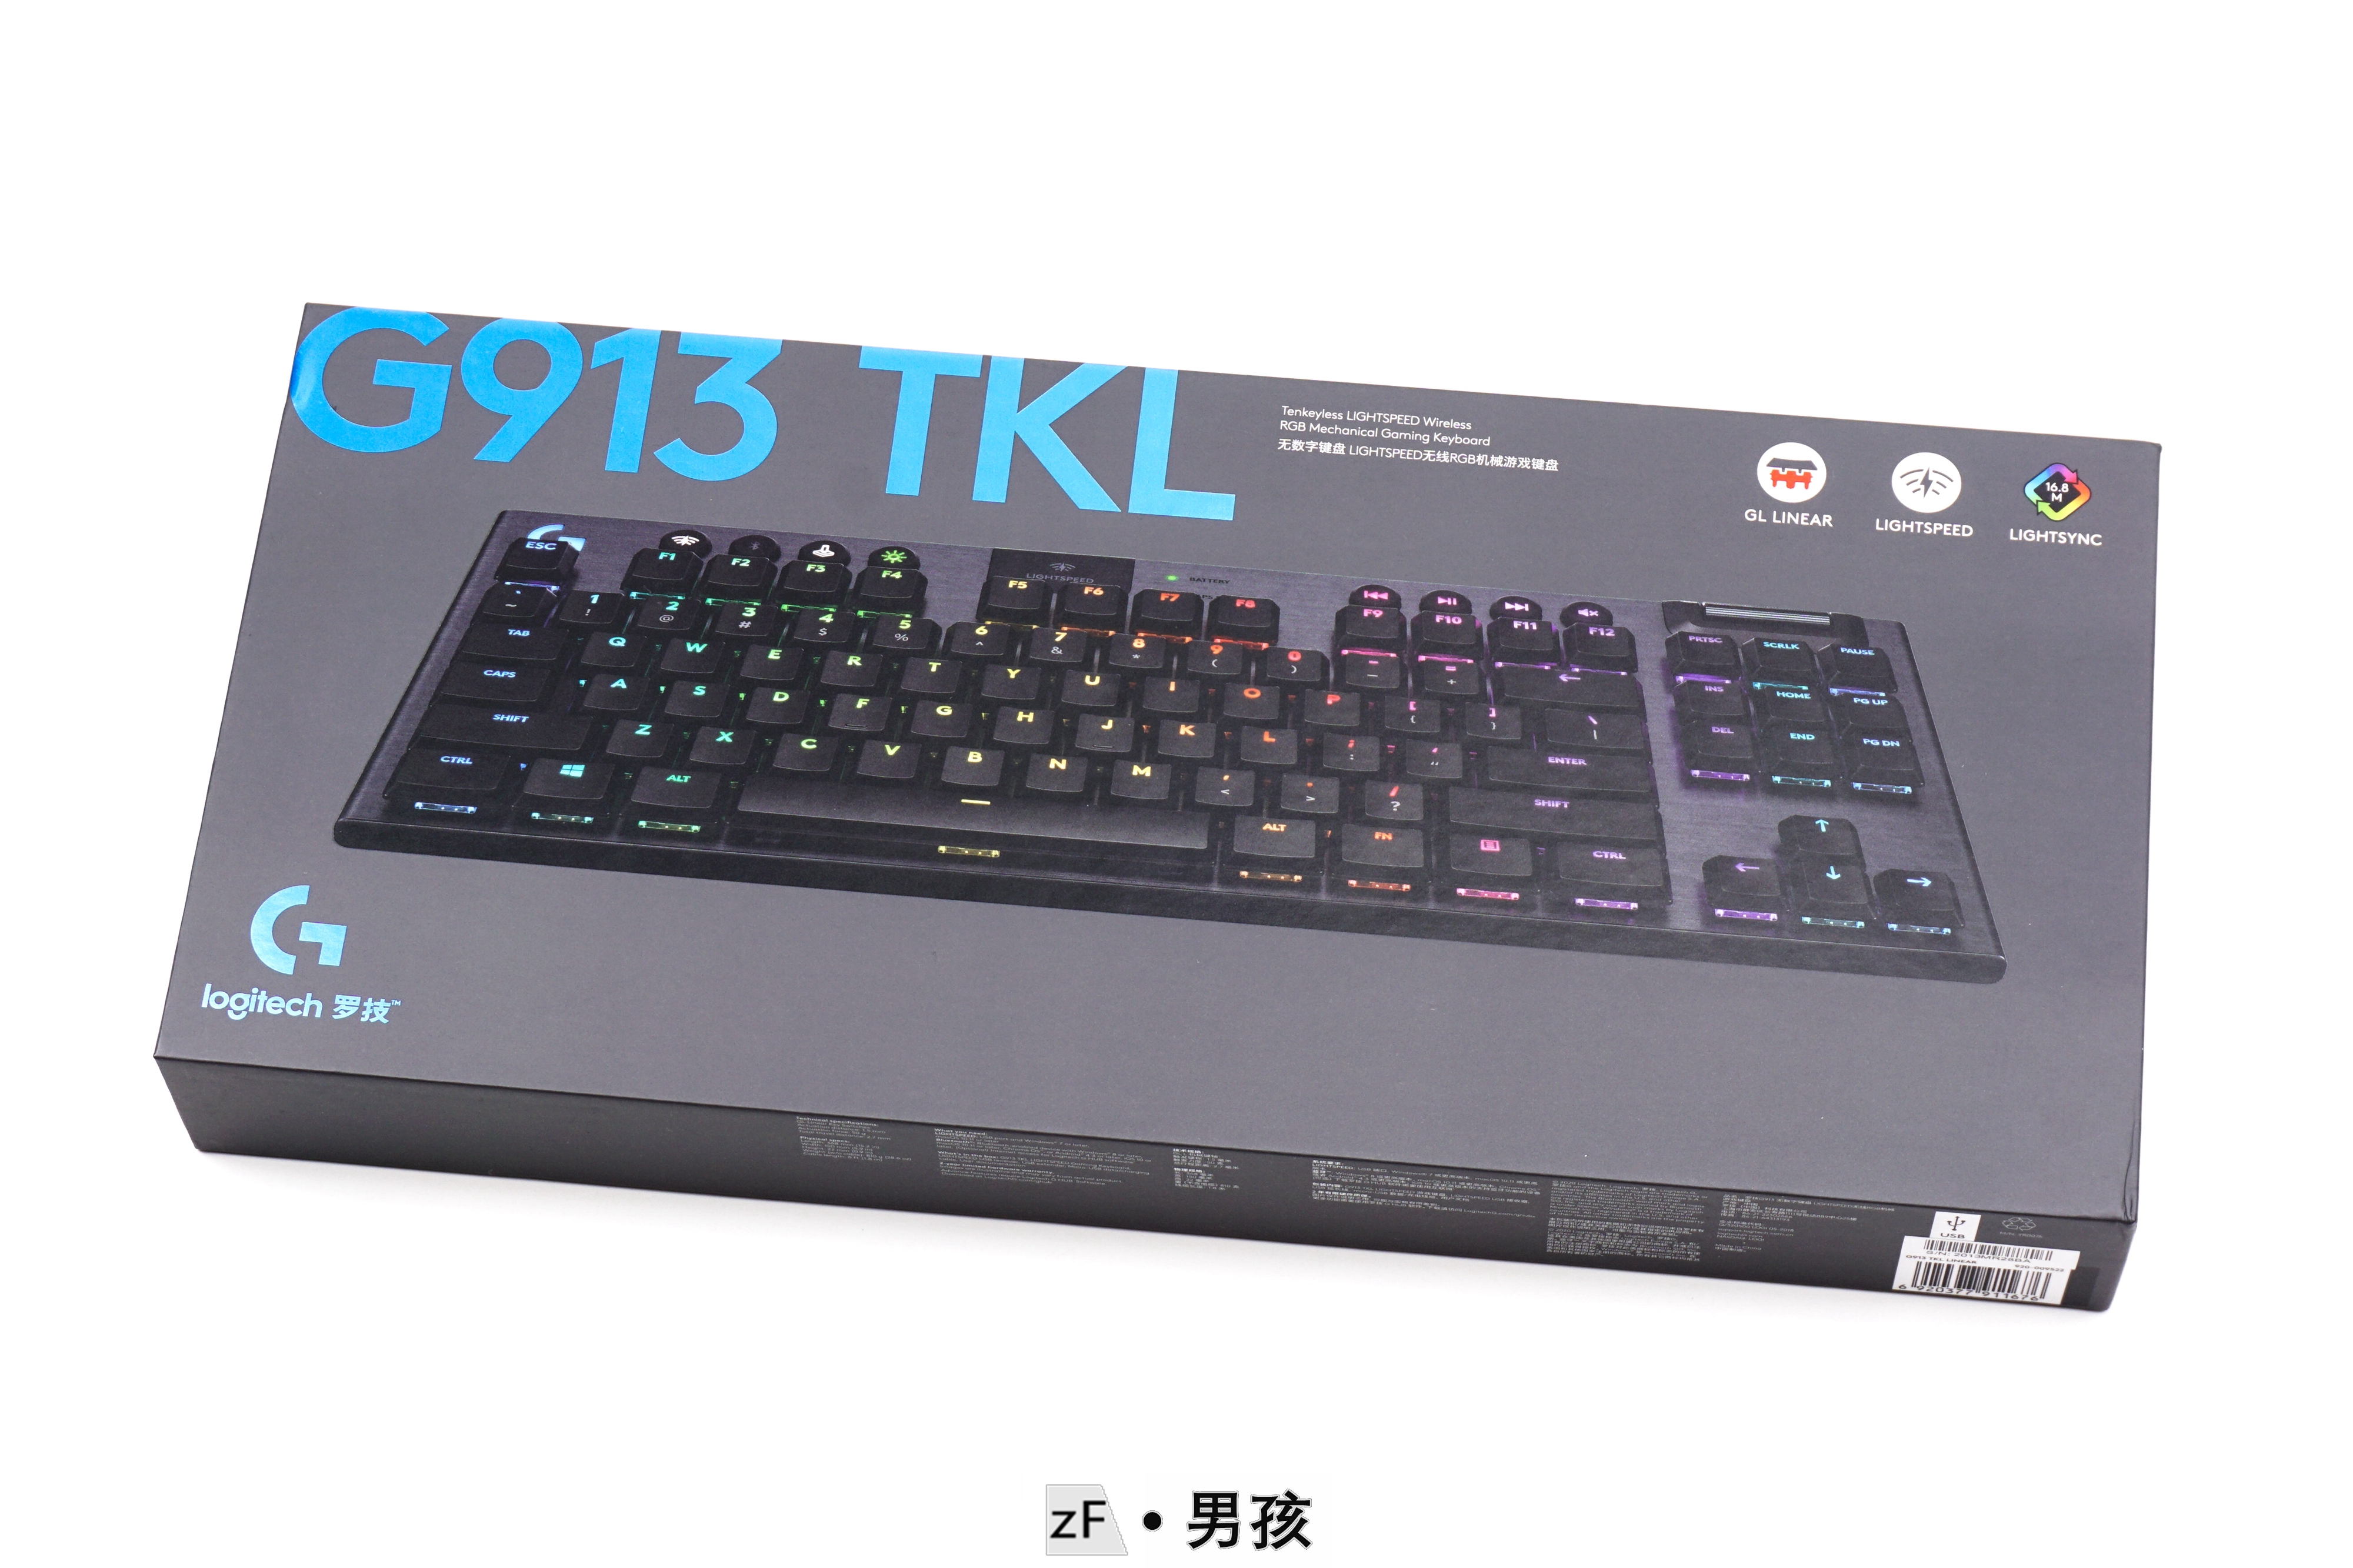 全网首拆——罗技G913 TKL双模无线键盘，测评&拆解- zFrontier 装备前线